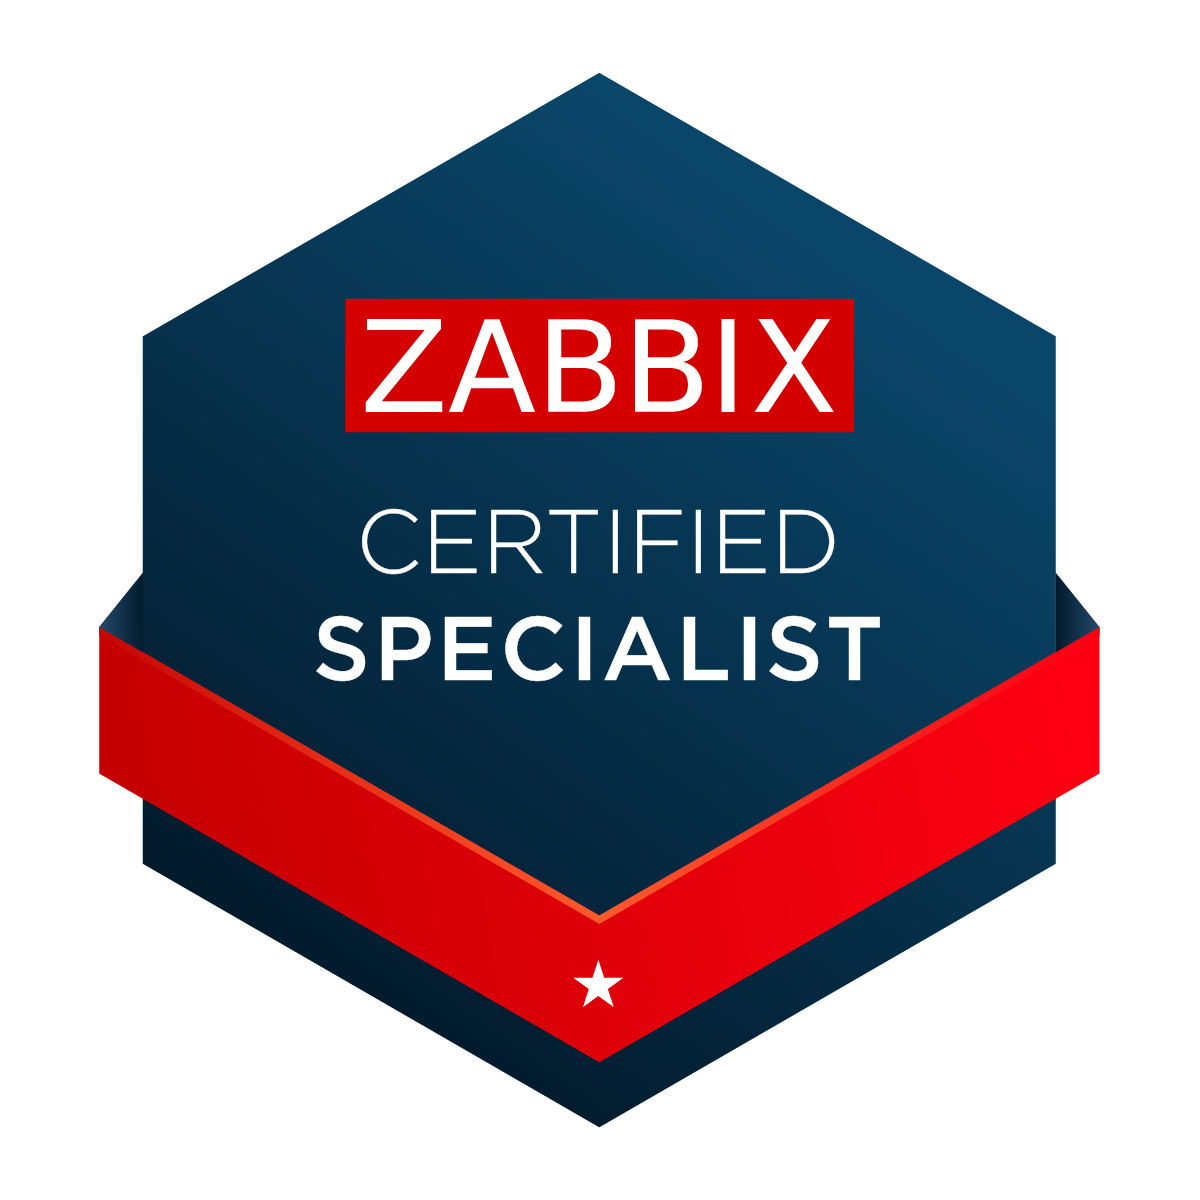 Zabbix Certified Specialist